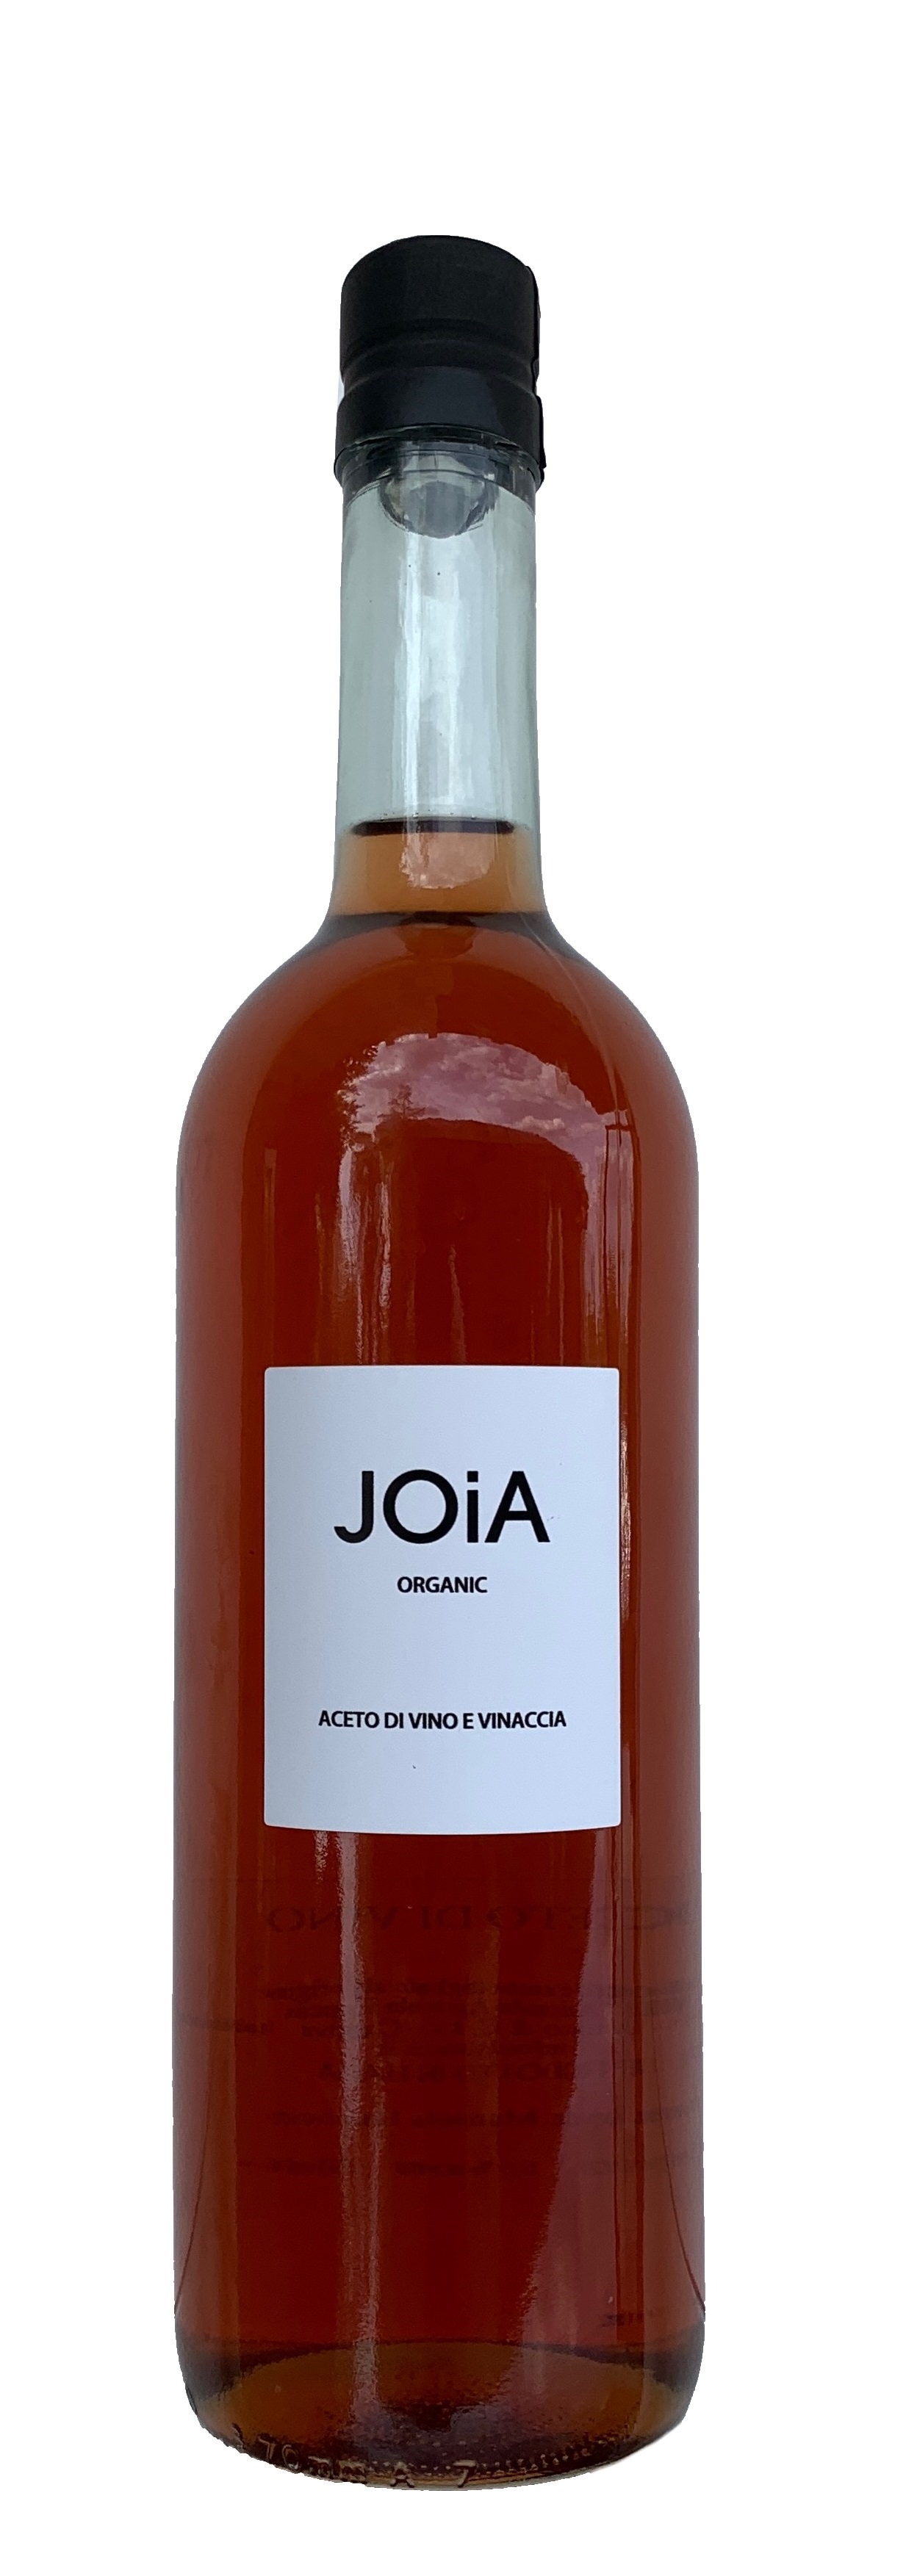 JOiA Organic 750 ml